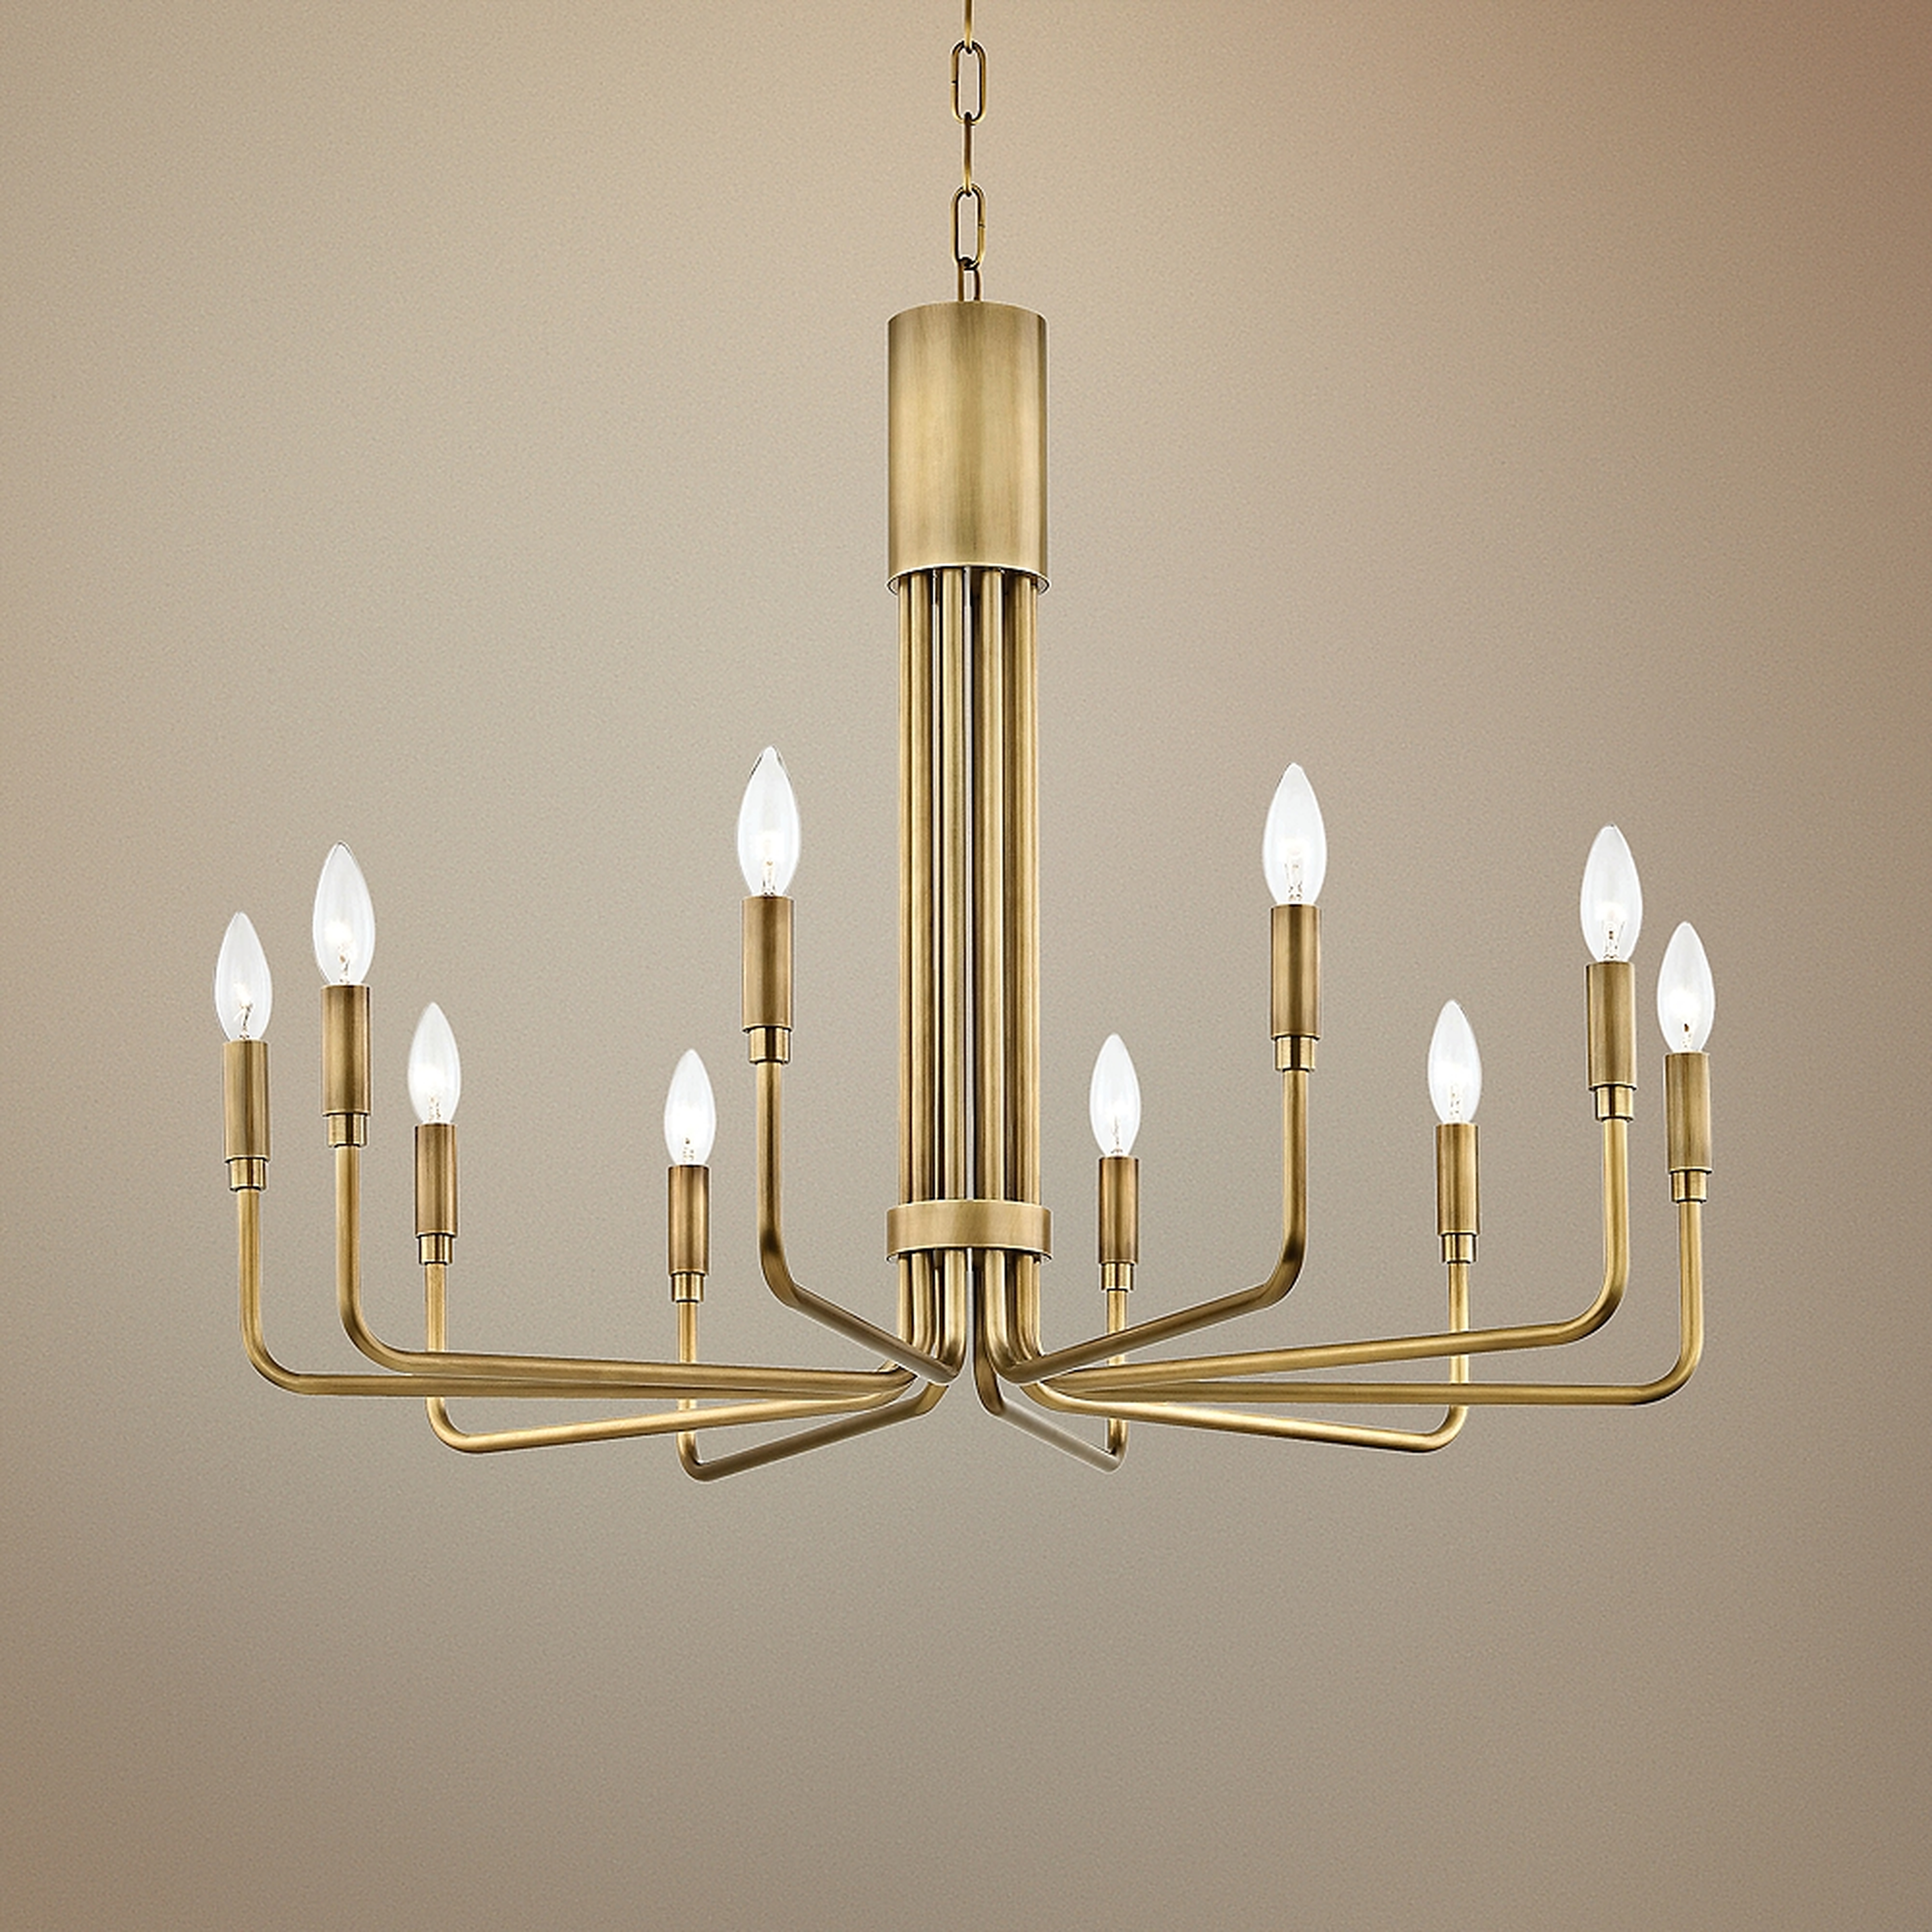 Mitzi Brigitte 32" Wide Aged Brass 10-Light Chandelier - Style # 47J57 - Lamps Plus